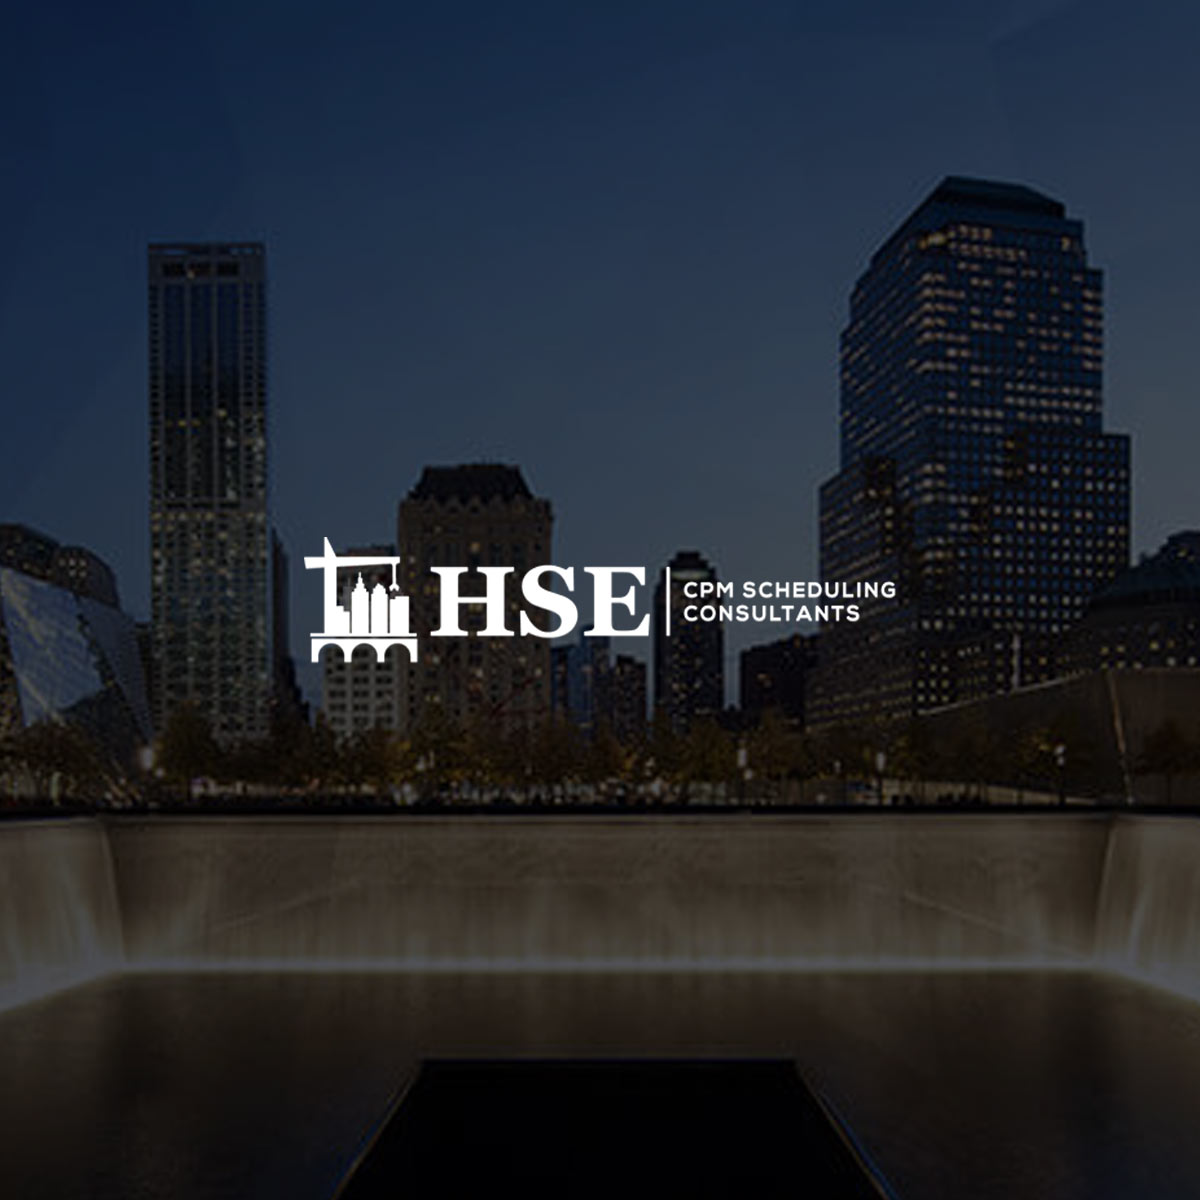 HSE Contractors Engineering Firm Website Design & Marketing | PixelChefs